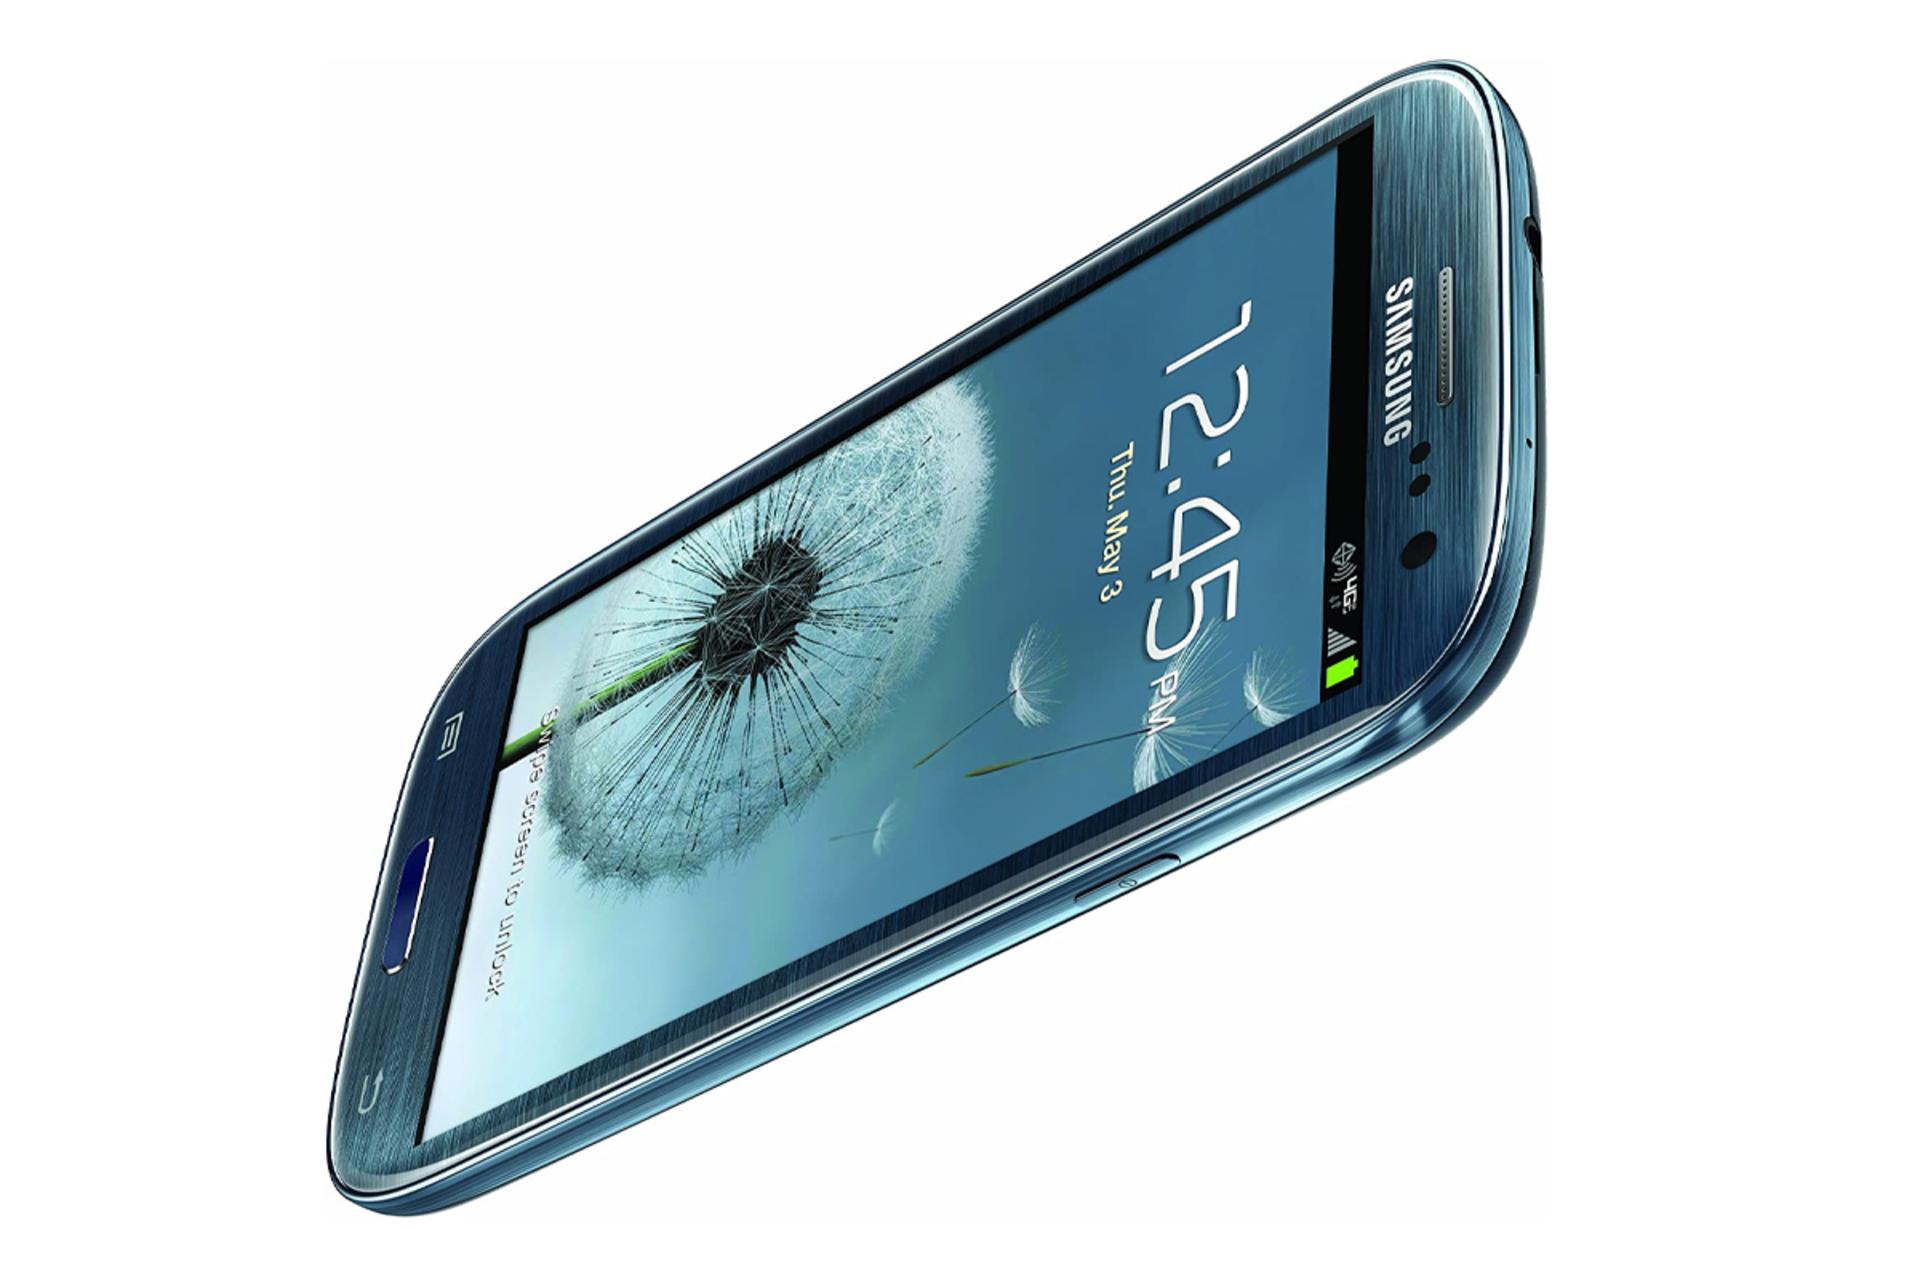 طراحی گلگسی اس 3 I9305 سامسونگ Samsung I9305 Galaxy S III